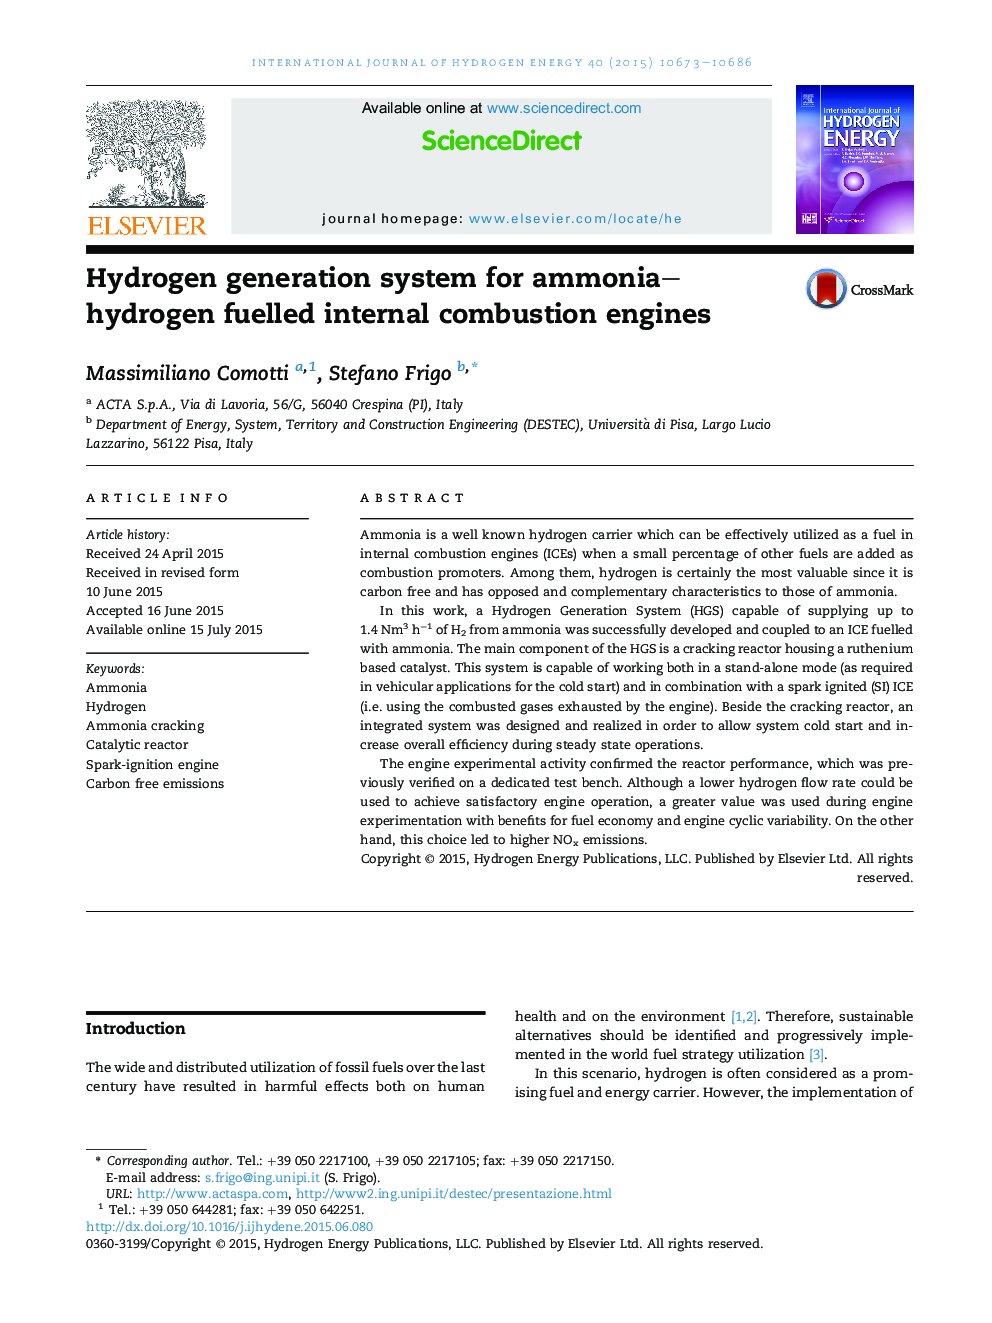 سیستم تولید هیدروژن برای آمونیاک هیدروژن سوخت موتورهای احتراق داخلی 